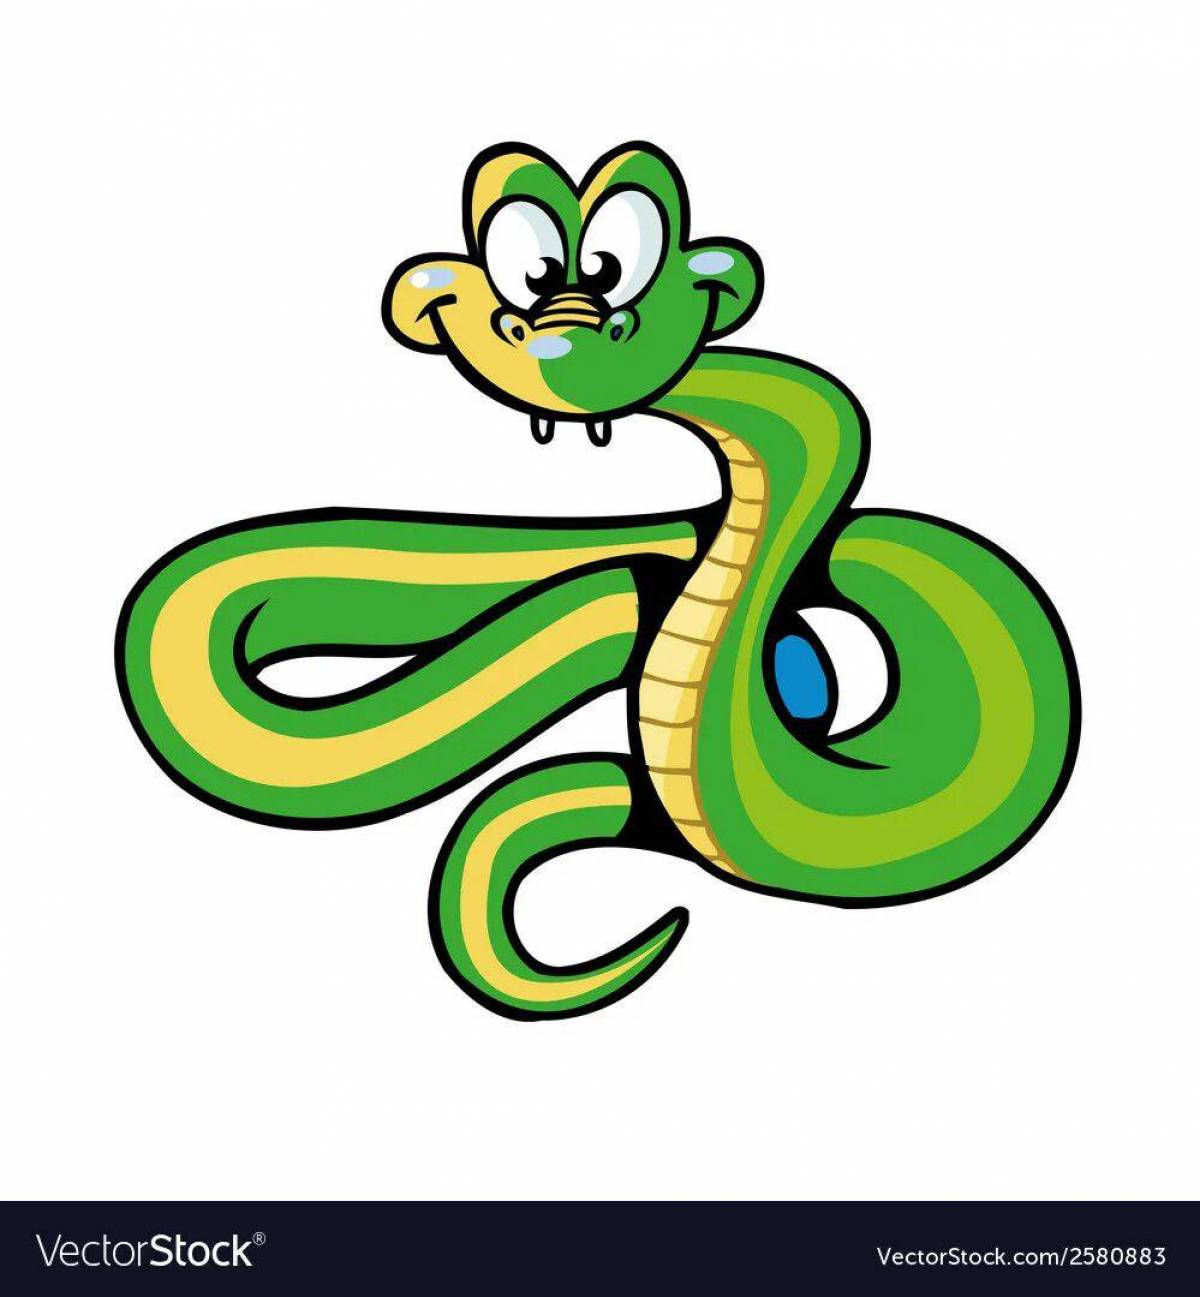 Змея для детей #18